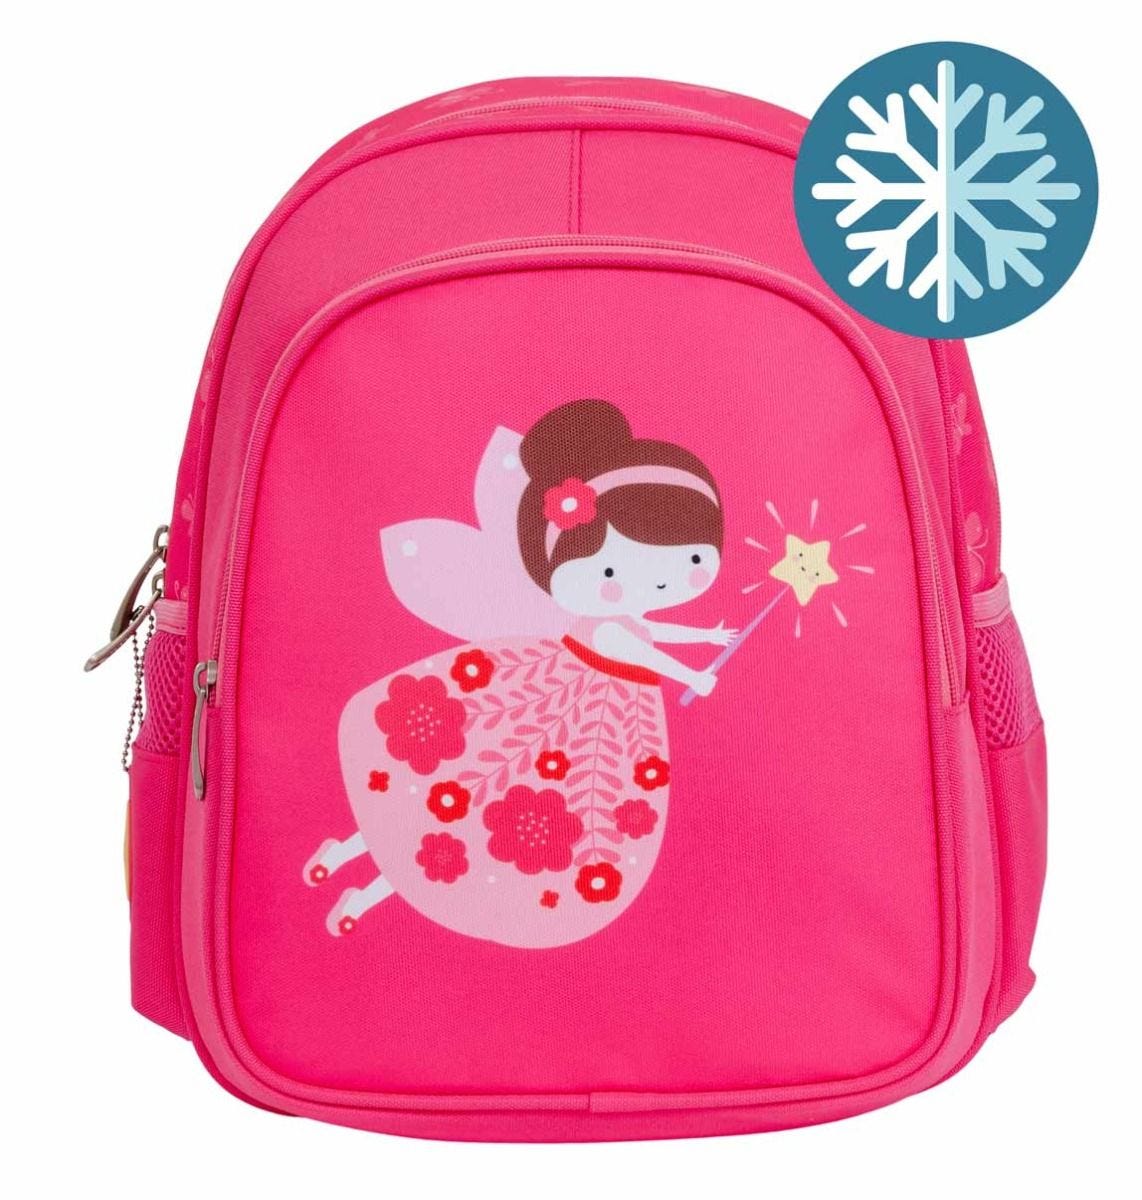 bpfapi37-lr-5-backpack-fairy_1